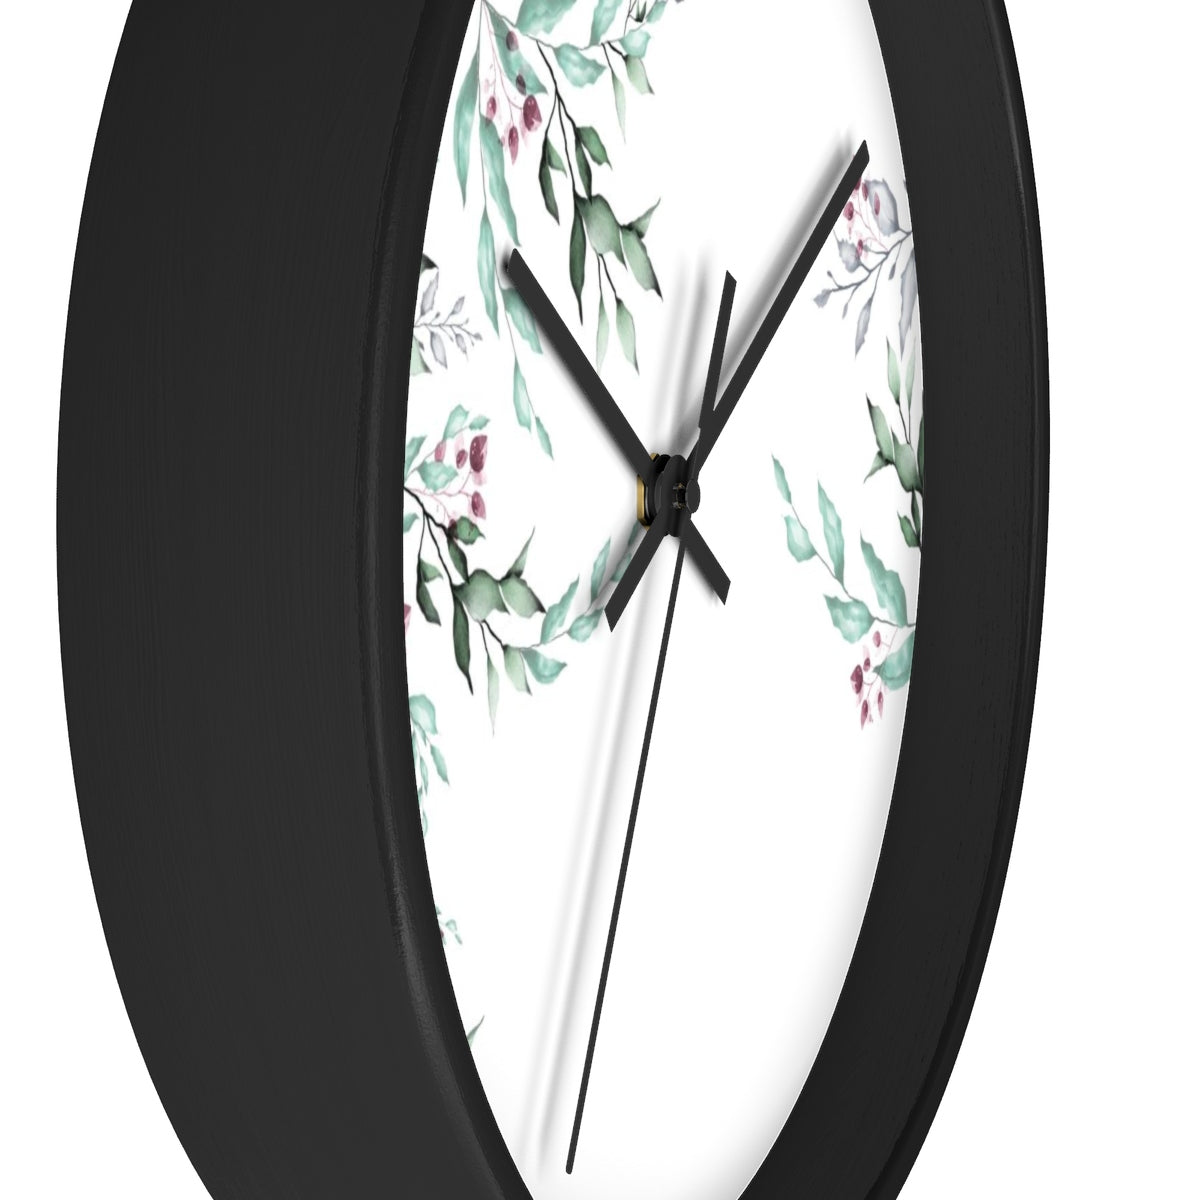 Minimalist Wall Clock - Liz Kapiloto Art & Design